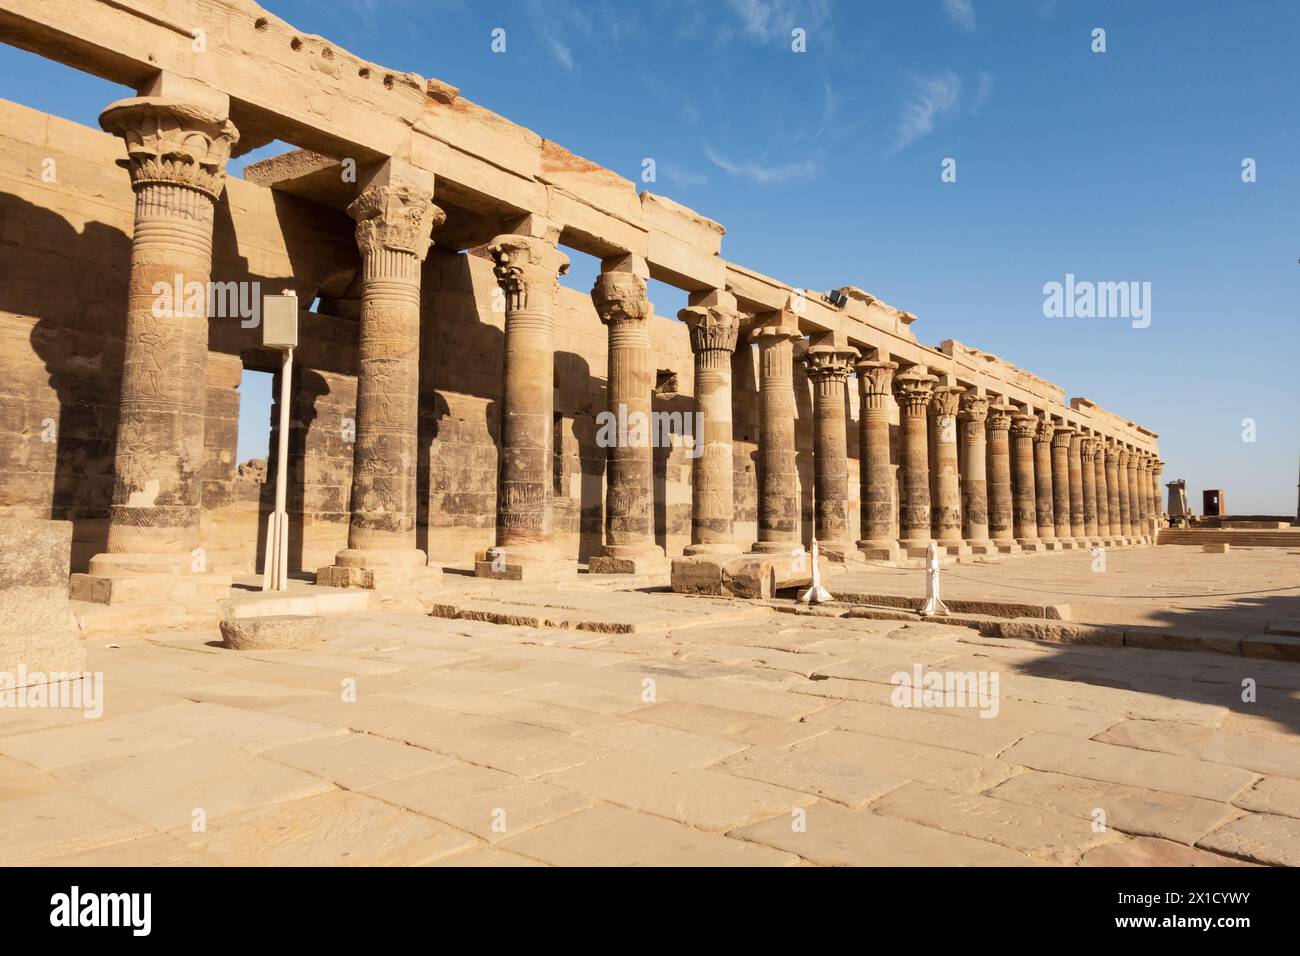 Colonnades orientales dans le temple d'Arsenophis, complexe du temple de Philae, île d'Agilkia, réservoir du barrage d'Assouan. Lieu de sépulture d'Osiris. Égypte Banque D'Images